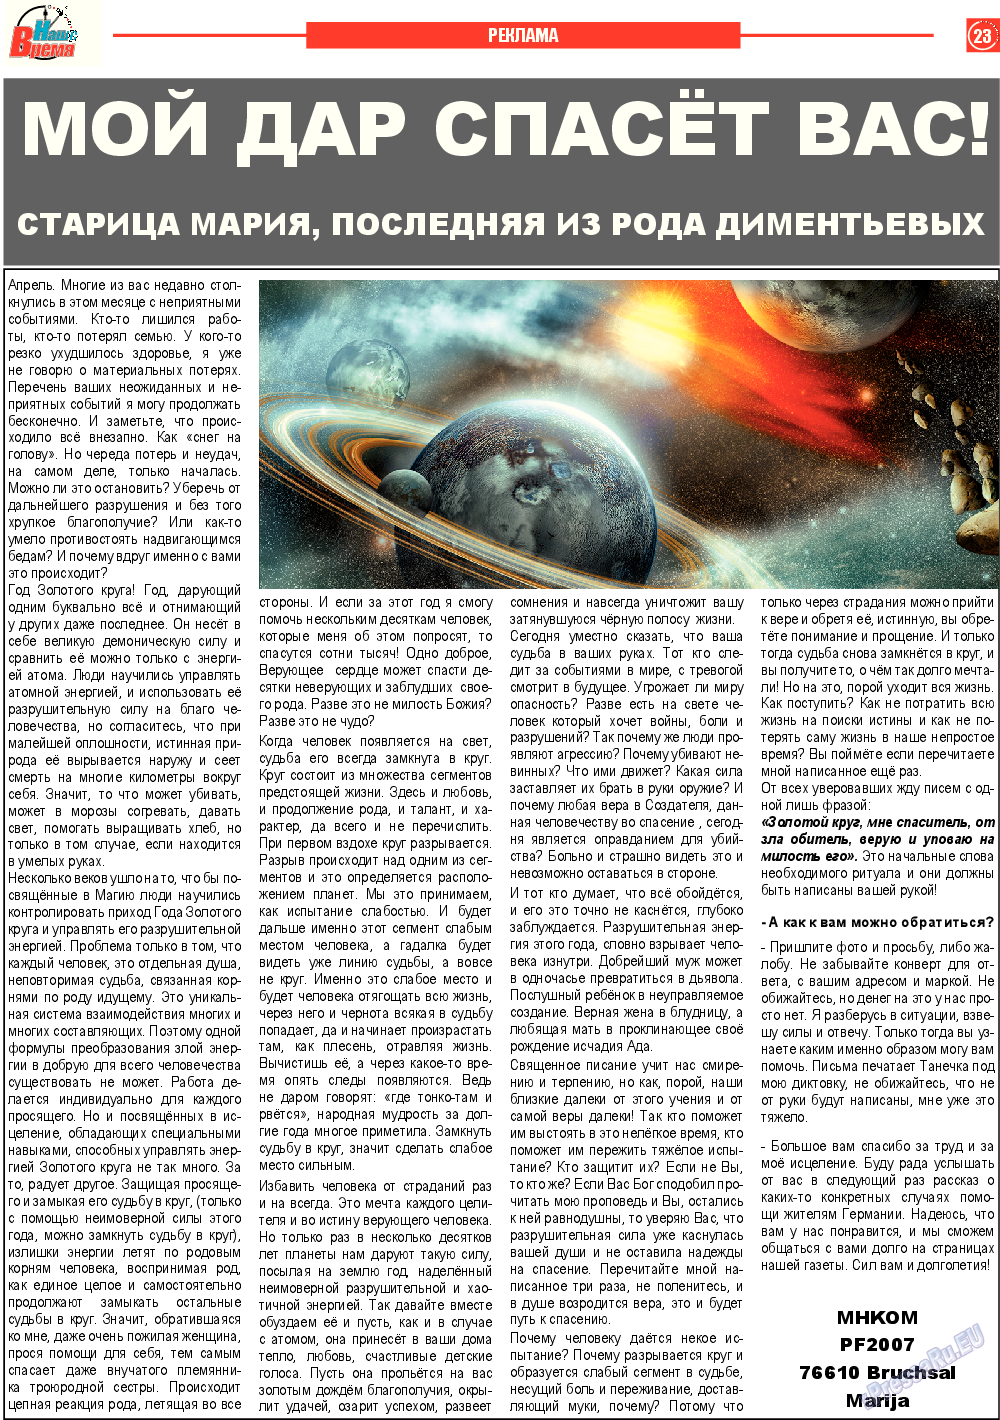 Наше время, газета. 2015 №4 стр.23